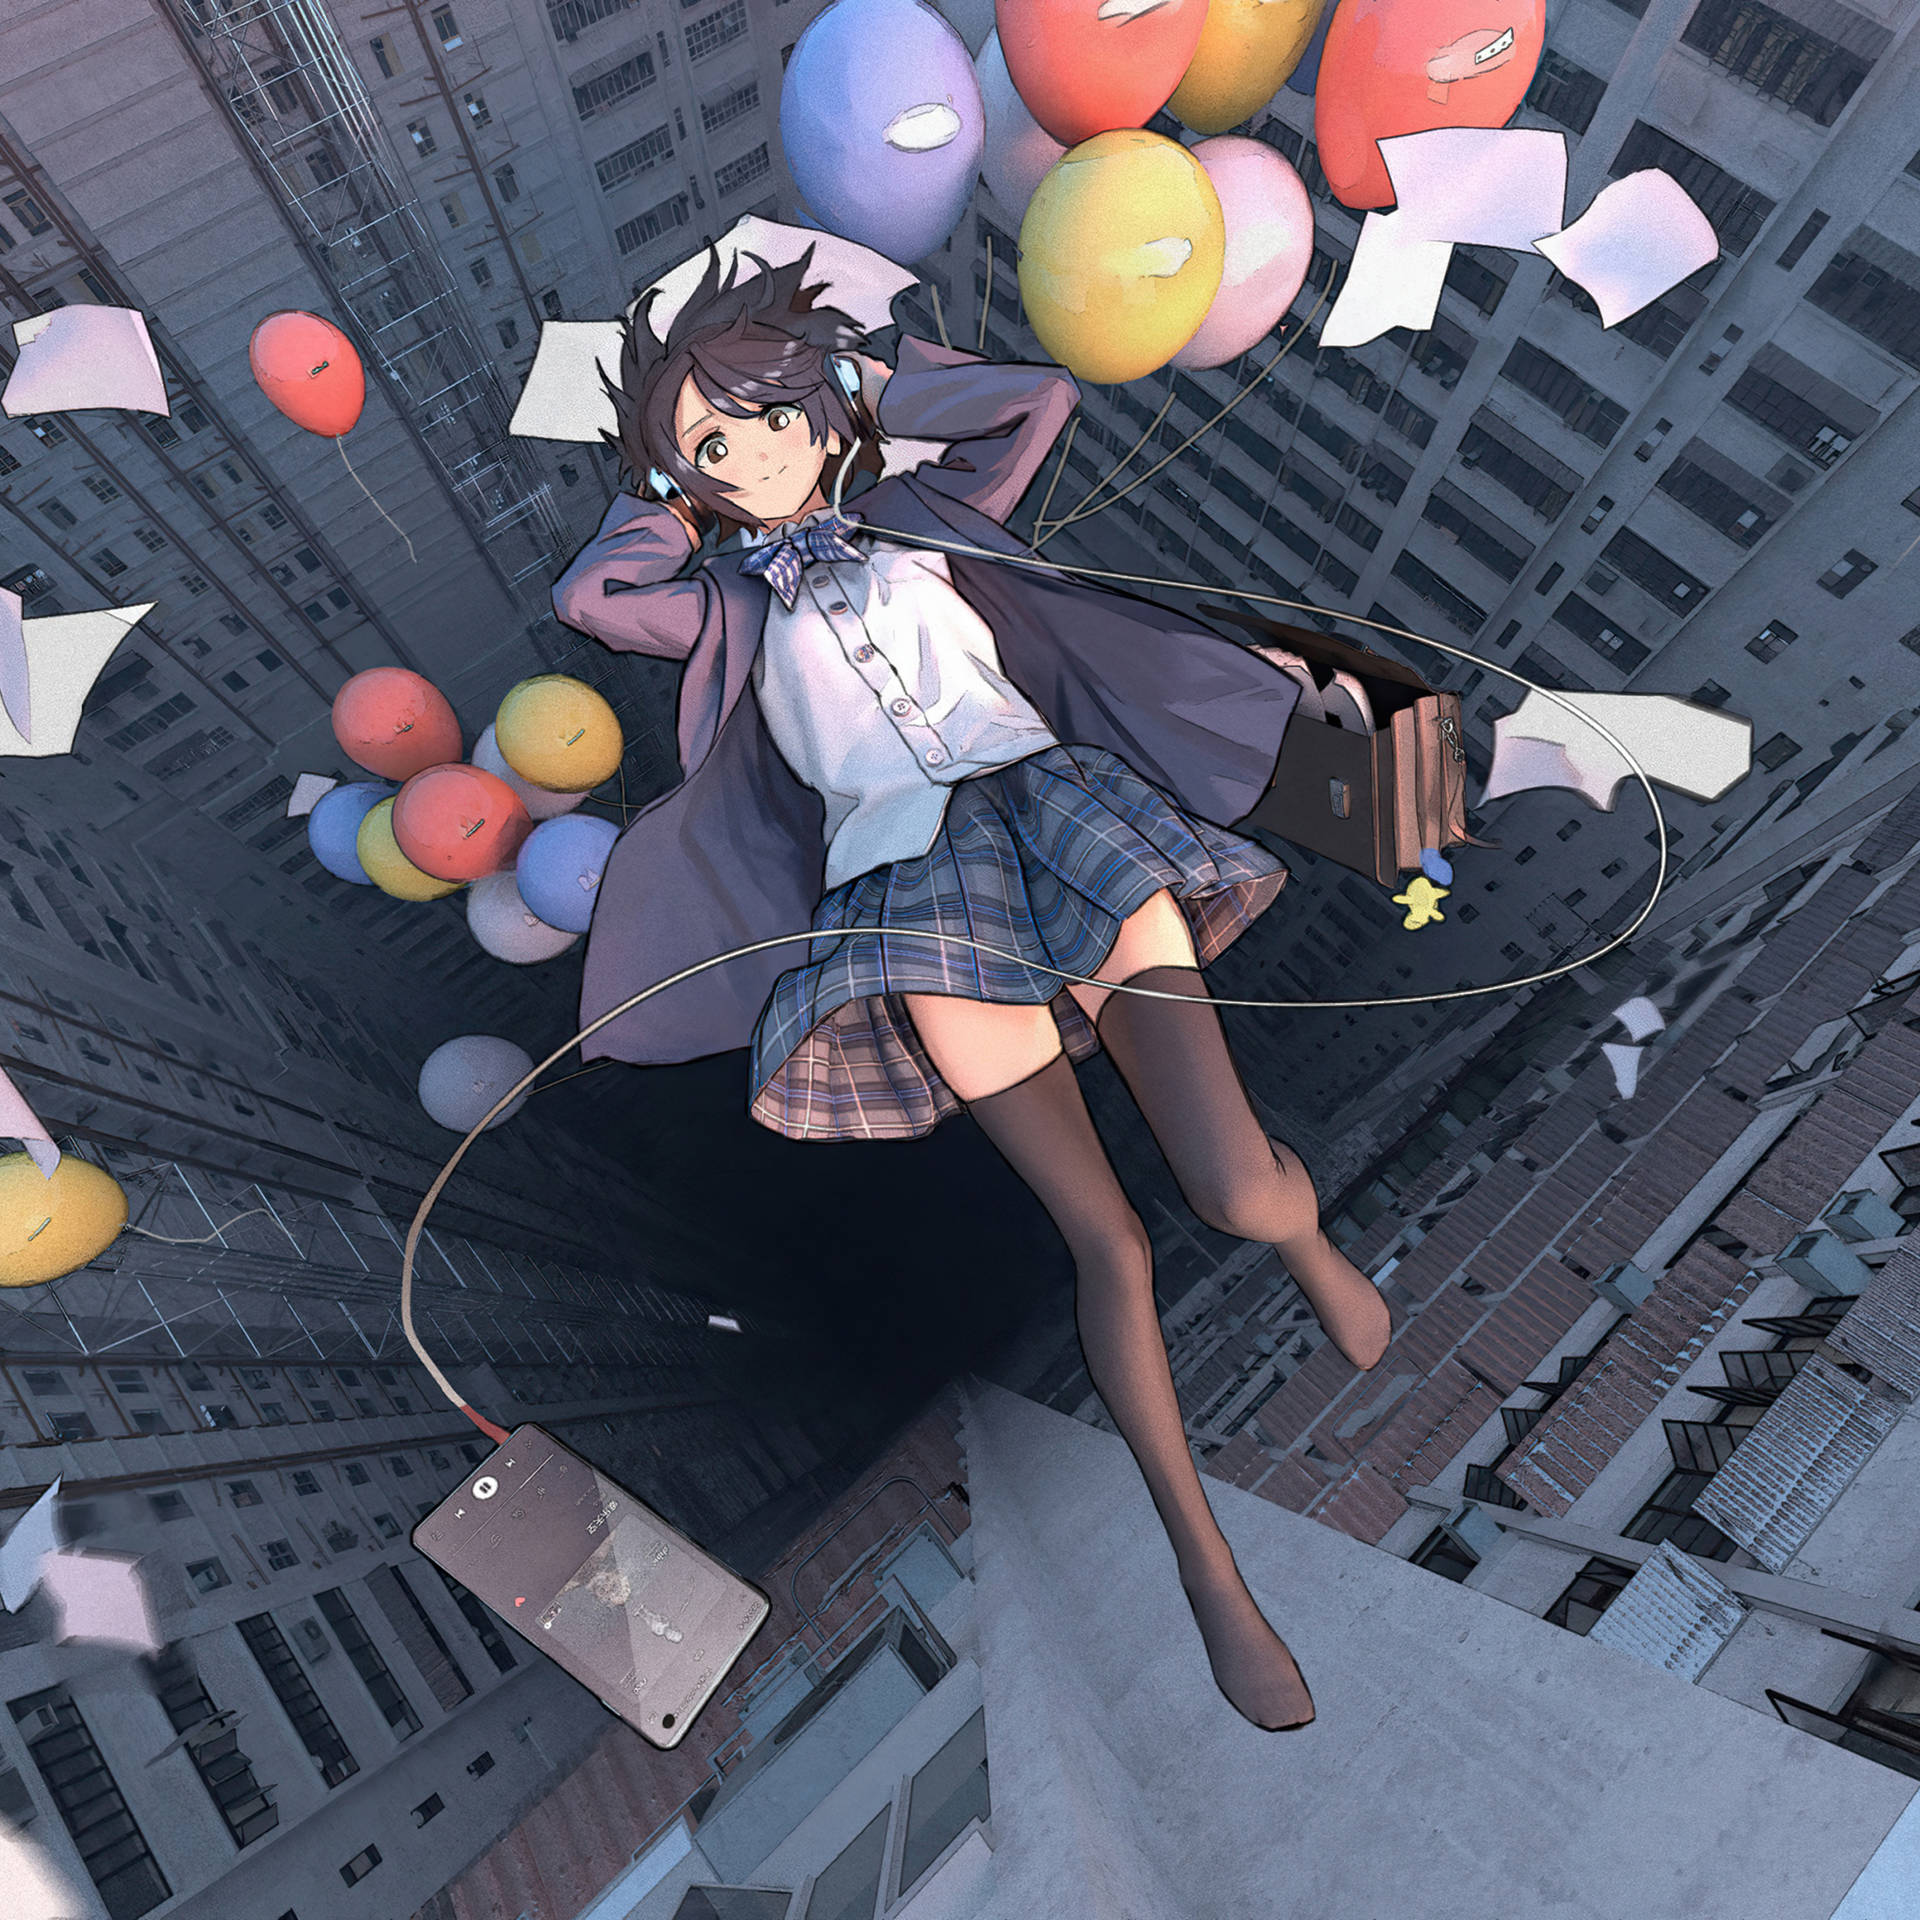 Animeipad Fallendes Mädchen Mit Luftballons Wallpaper